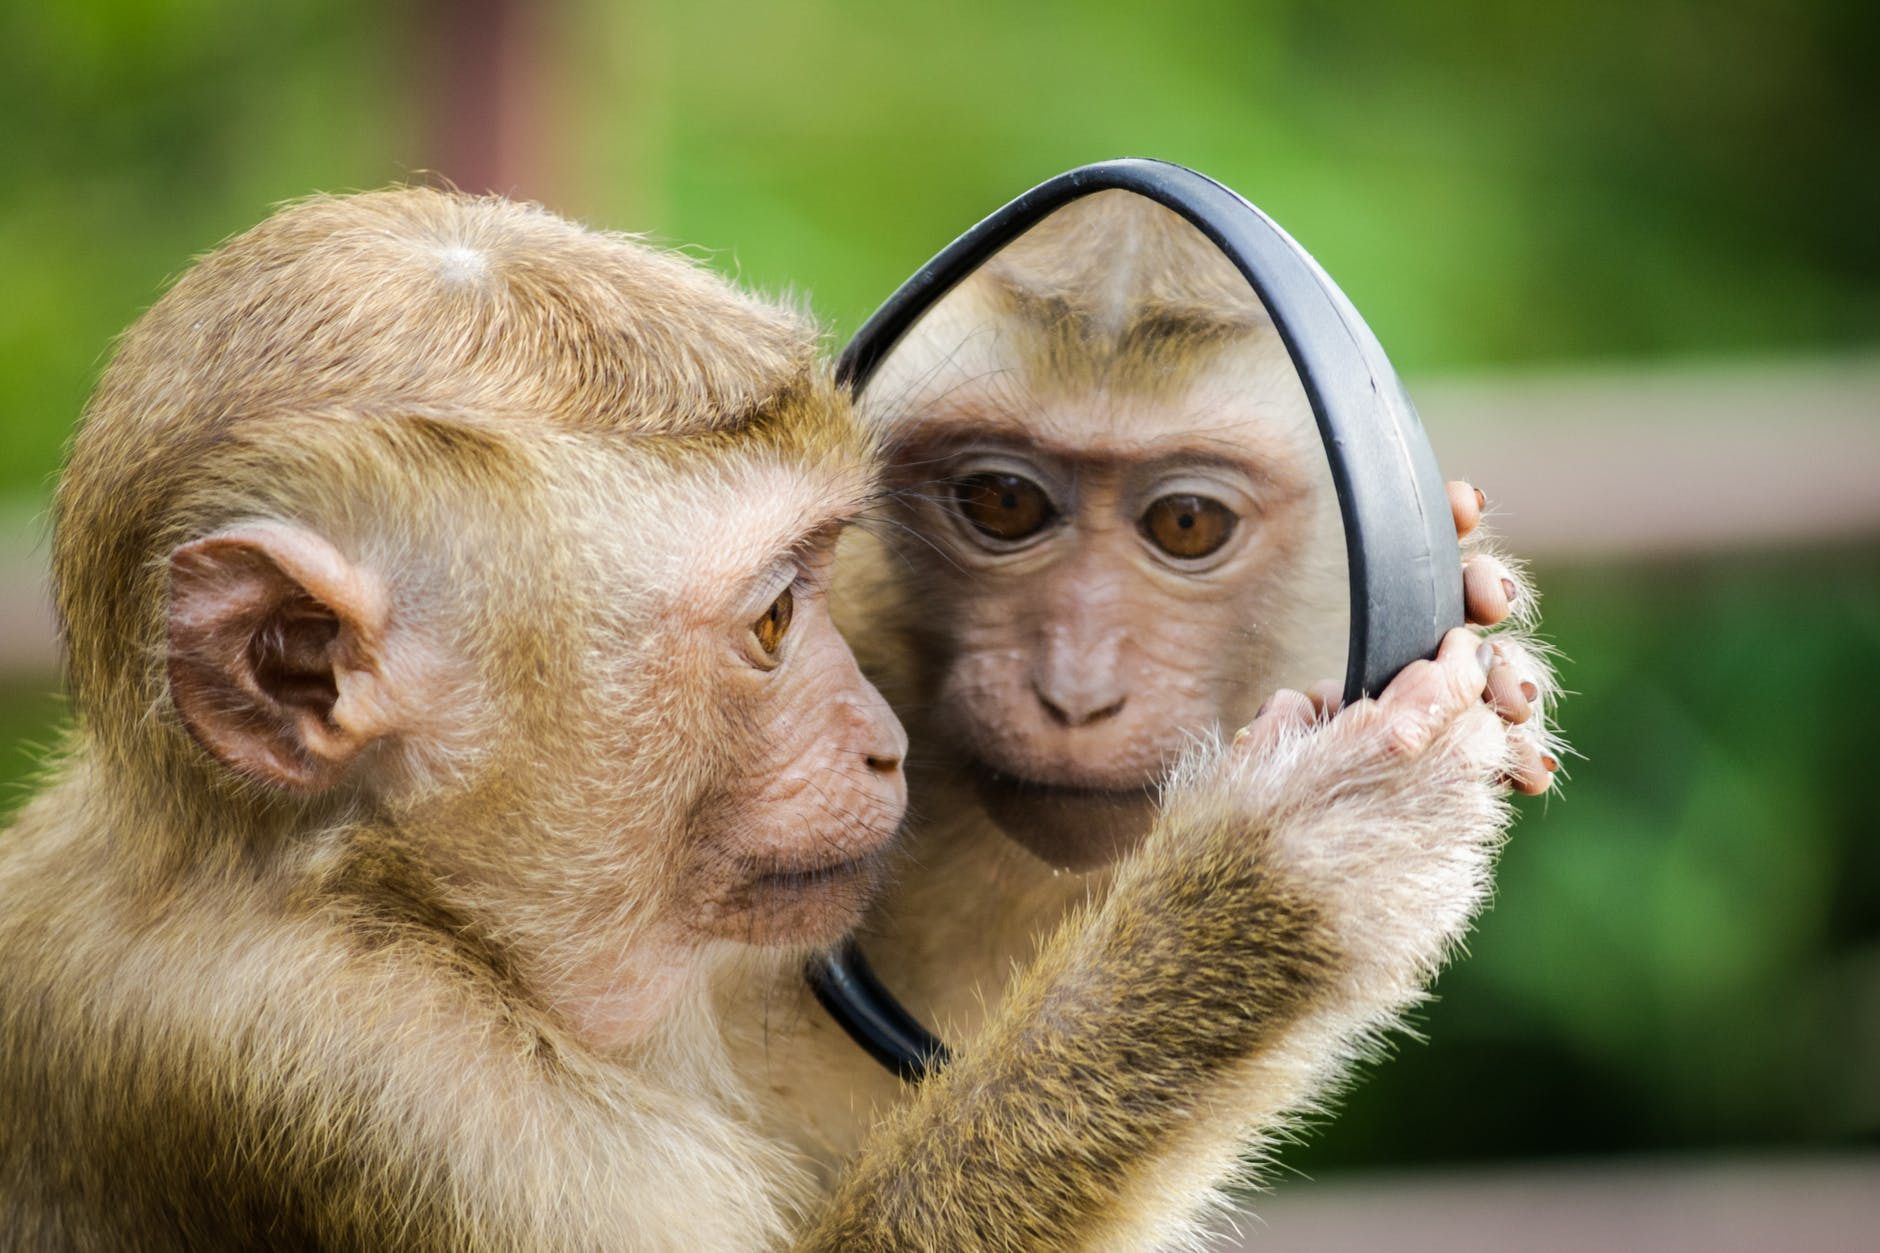 Що бачать у дзеркалі брати наші менші. Багато власників домашніх тварин переконані, що їх вихованці впізнають себе в дзеркалі.